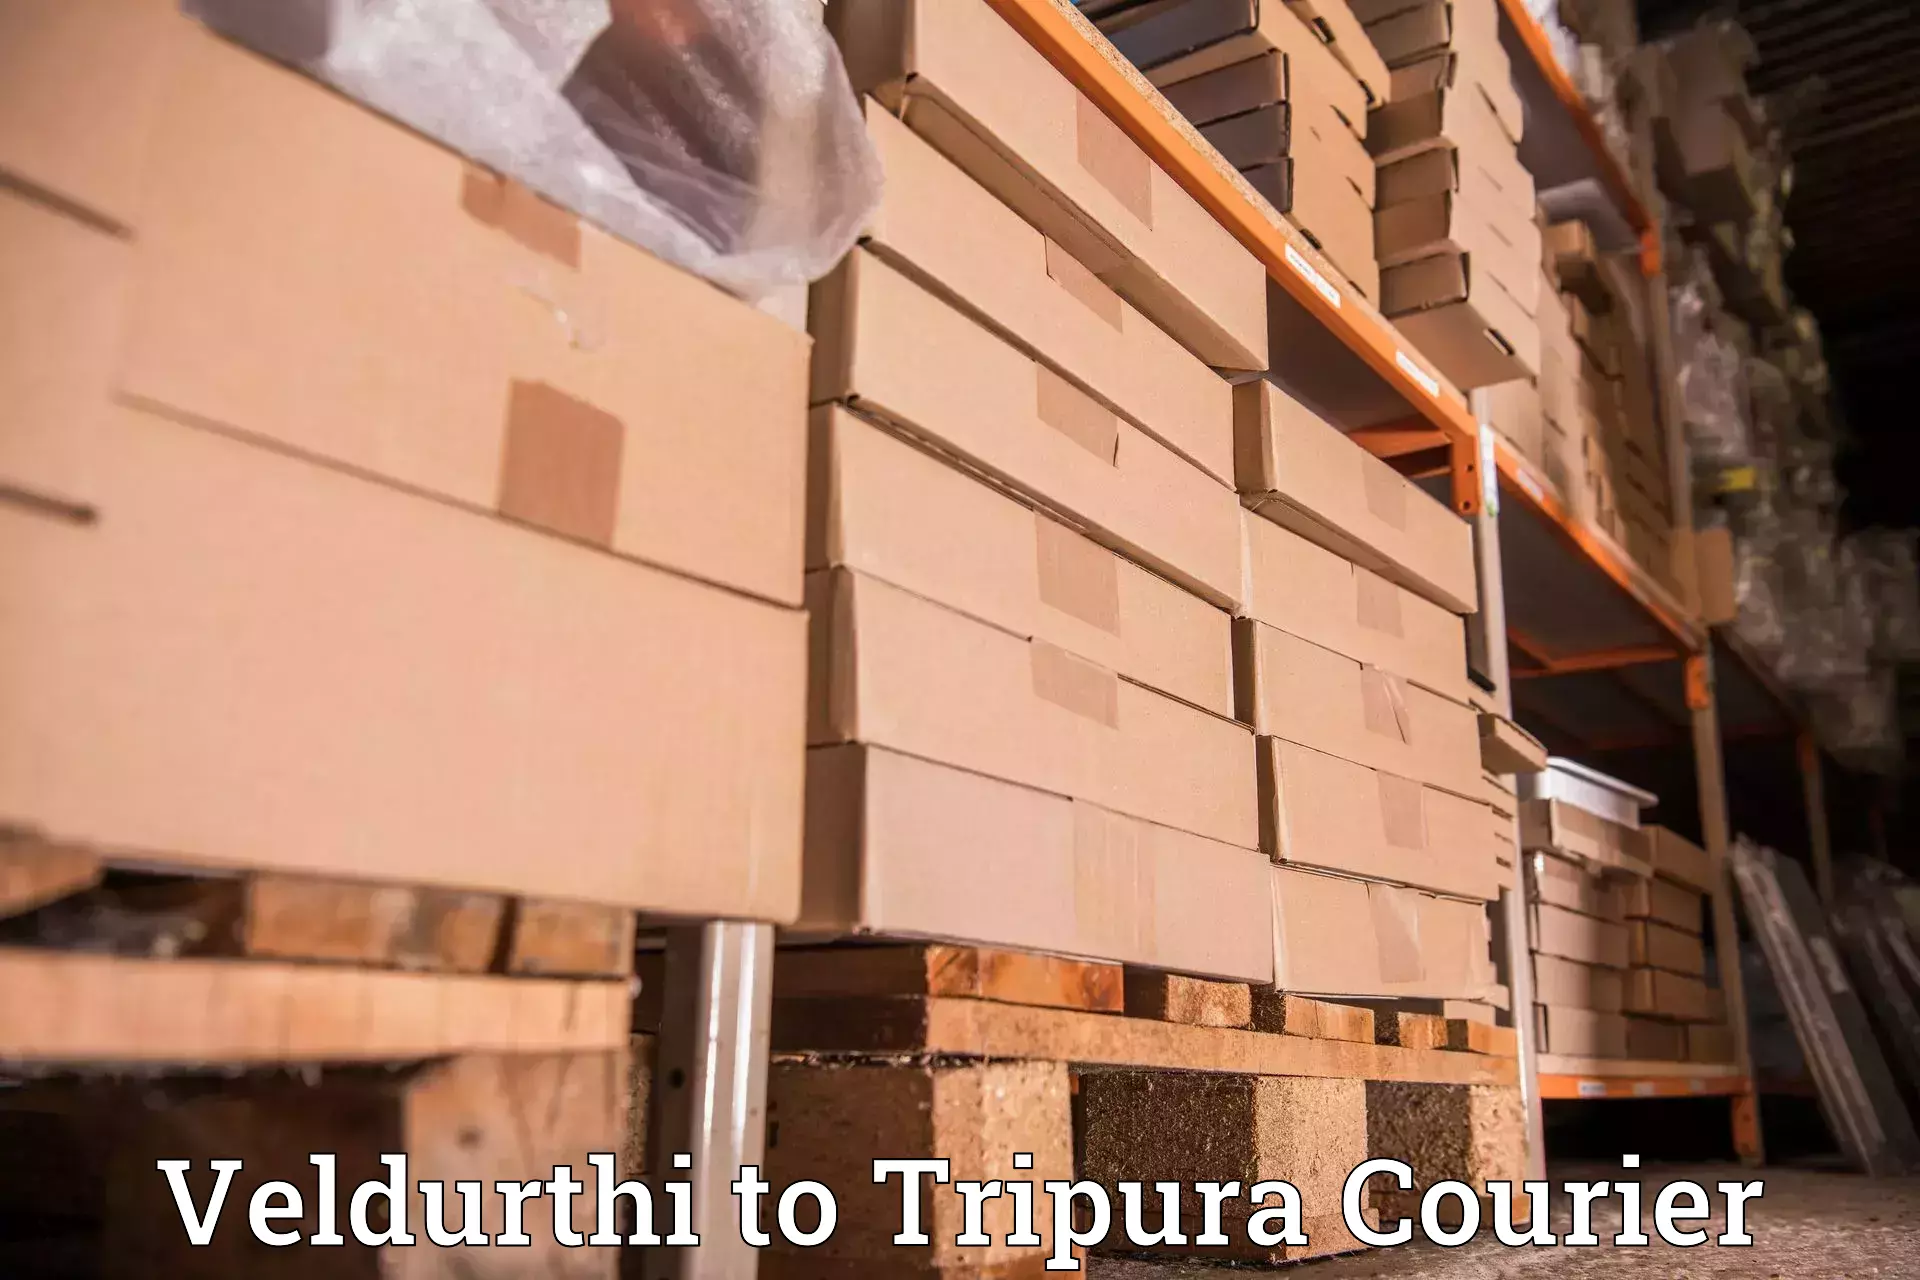 24-hour courier service Veldurthi to Amarpur